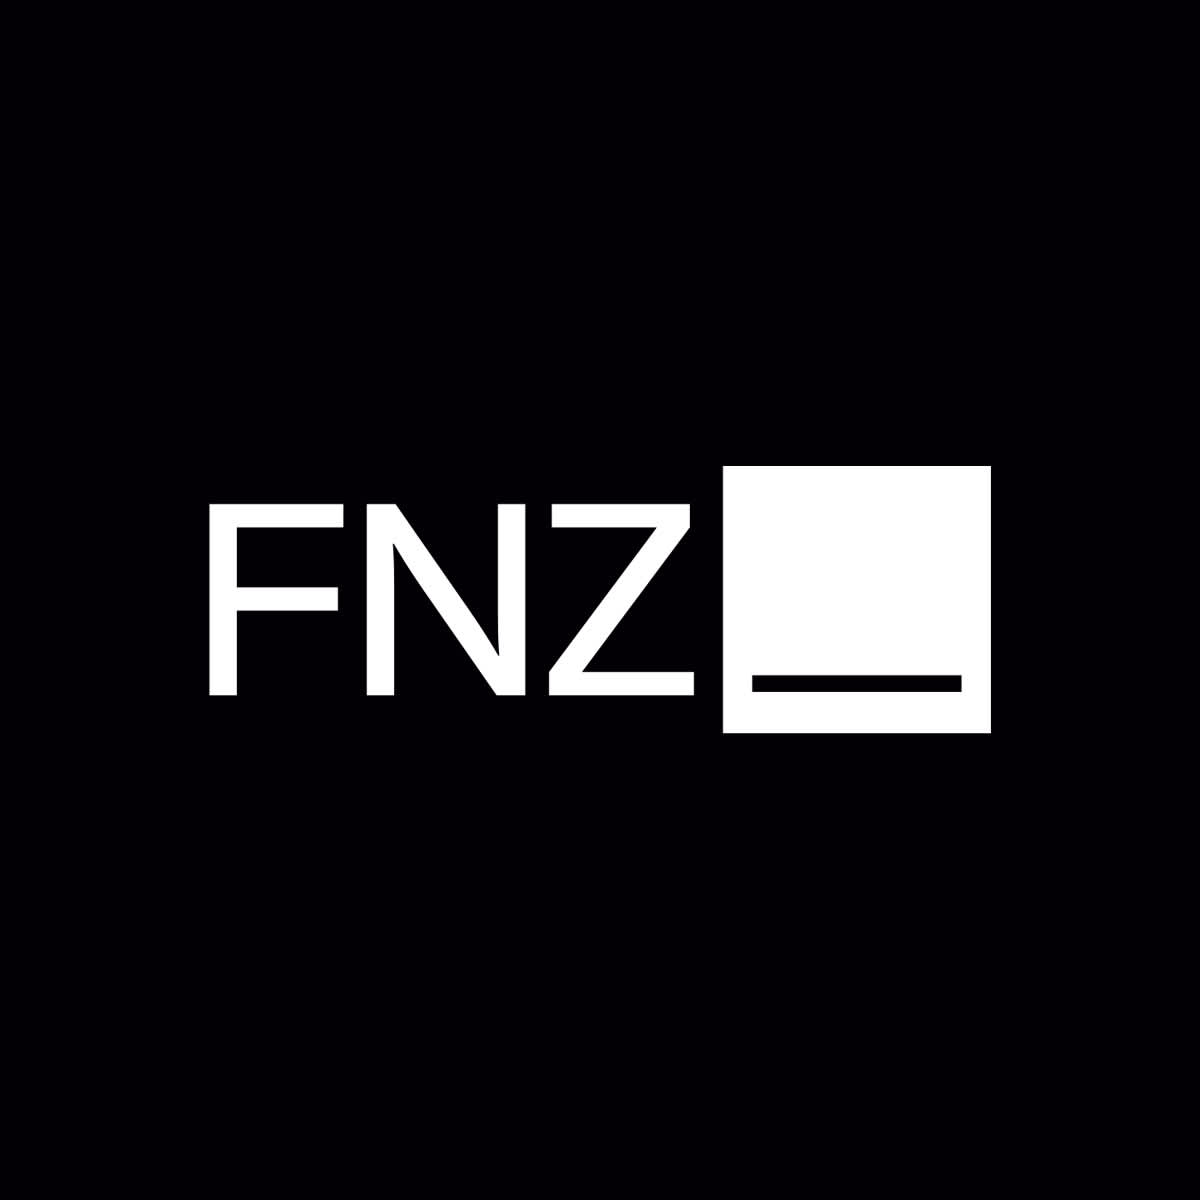 (c) Fnz.com